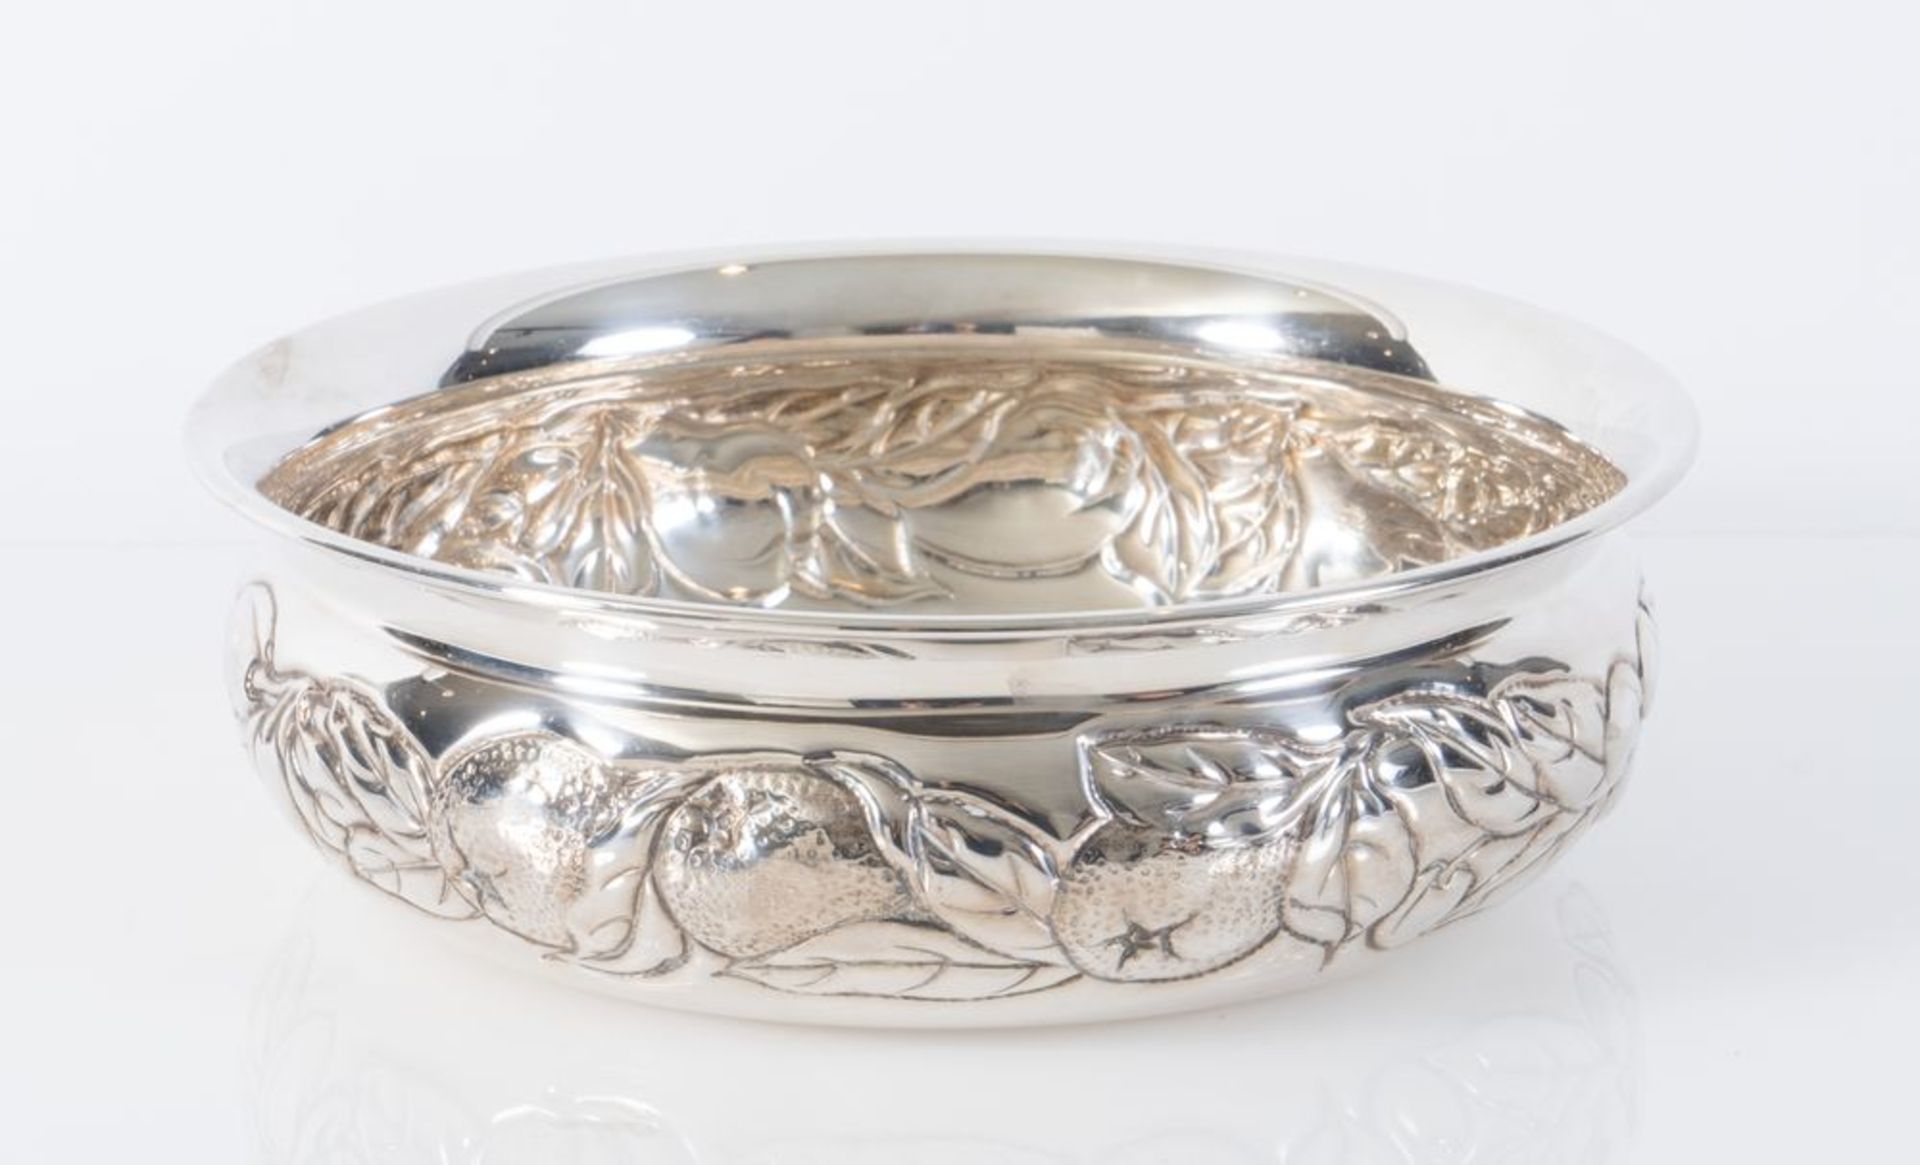 ITALIA, dal 1968. Portafrutta in argento 800 con decorazione floreale. All'interno reca punzoni: 800 - Image 2 of 4